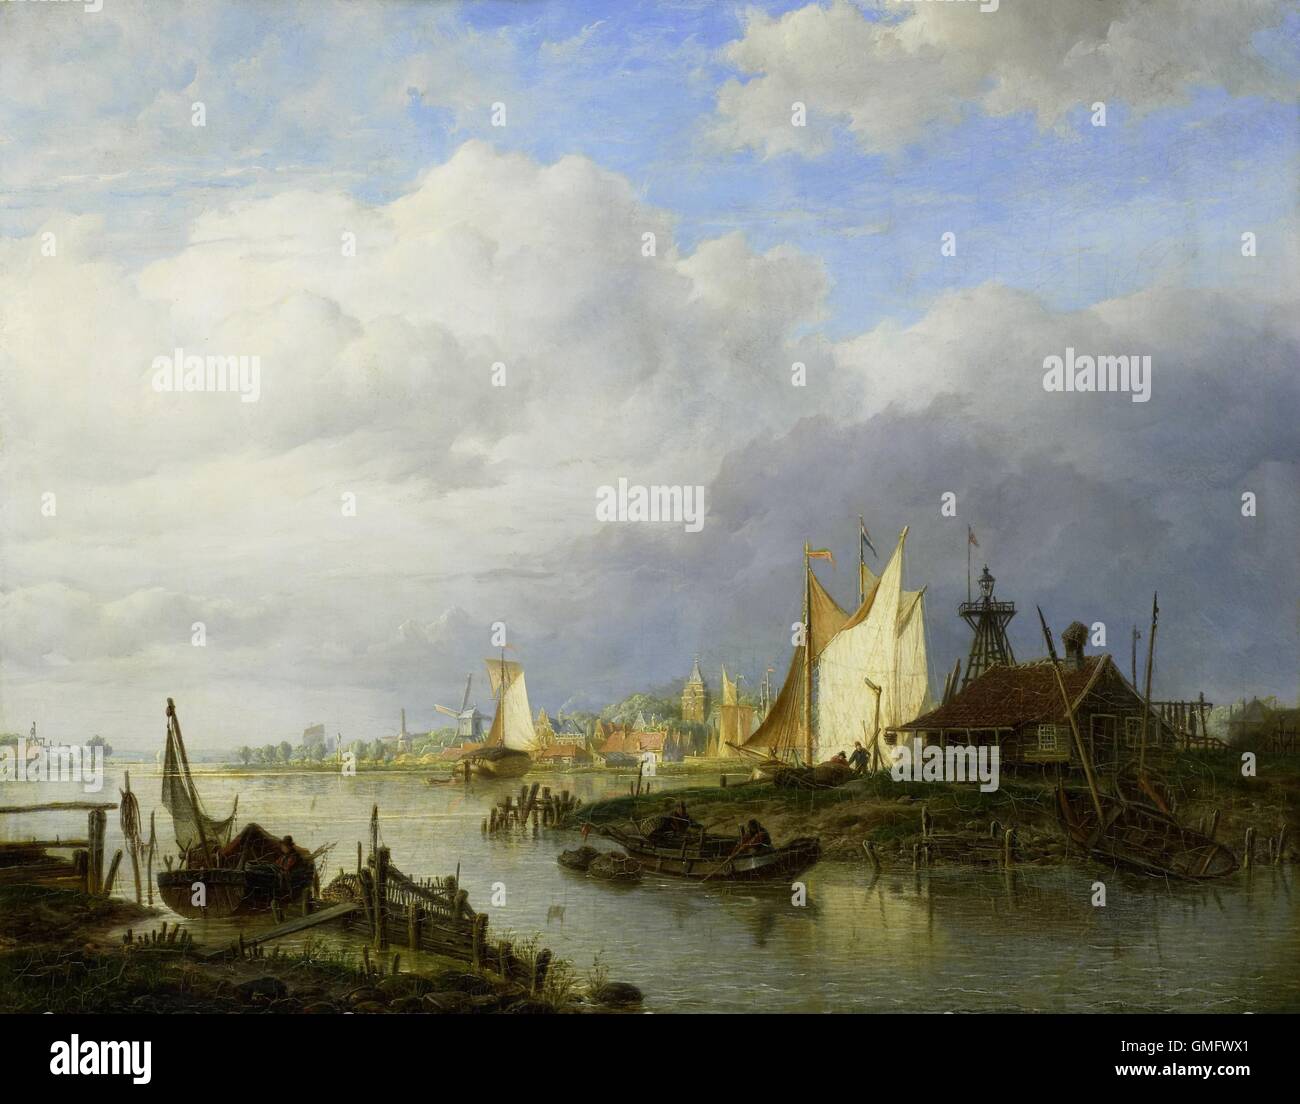 Bateaux sur une rivière avec un phare de lumière, par Hendrik Vettewinkel, 1847, la peinture hollandaise, huile sur panneau (BSLOC_2016_1_97) Banque D'Images